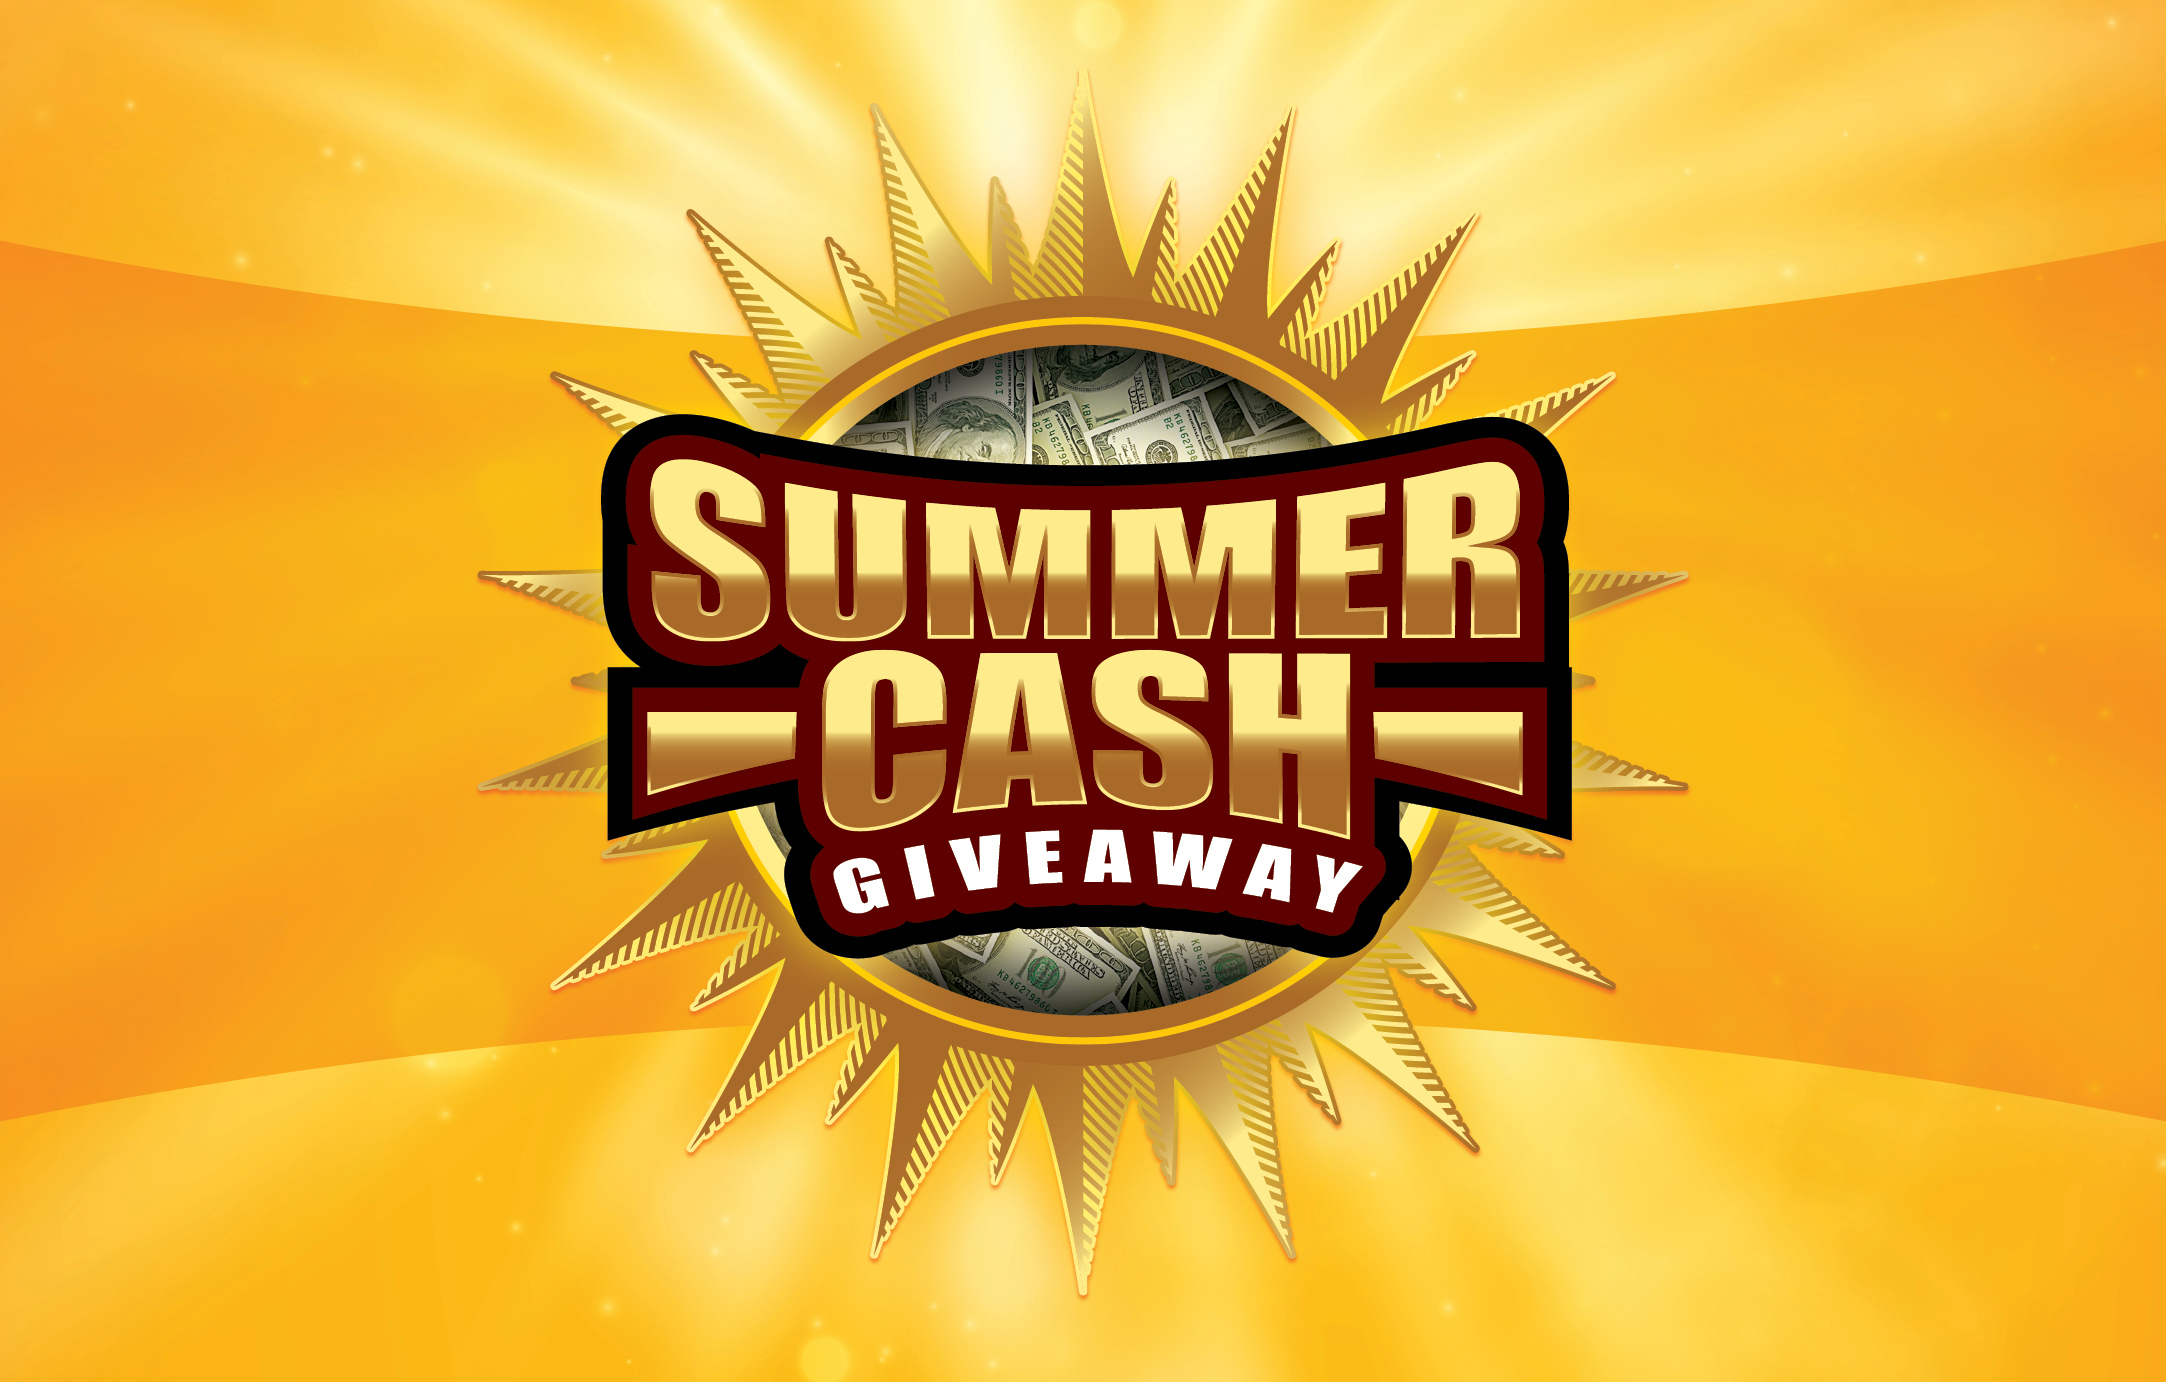 summer cash giveaway promotion